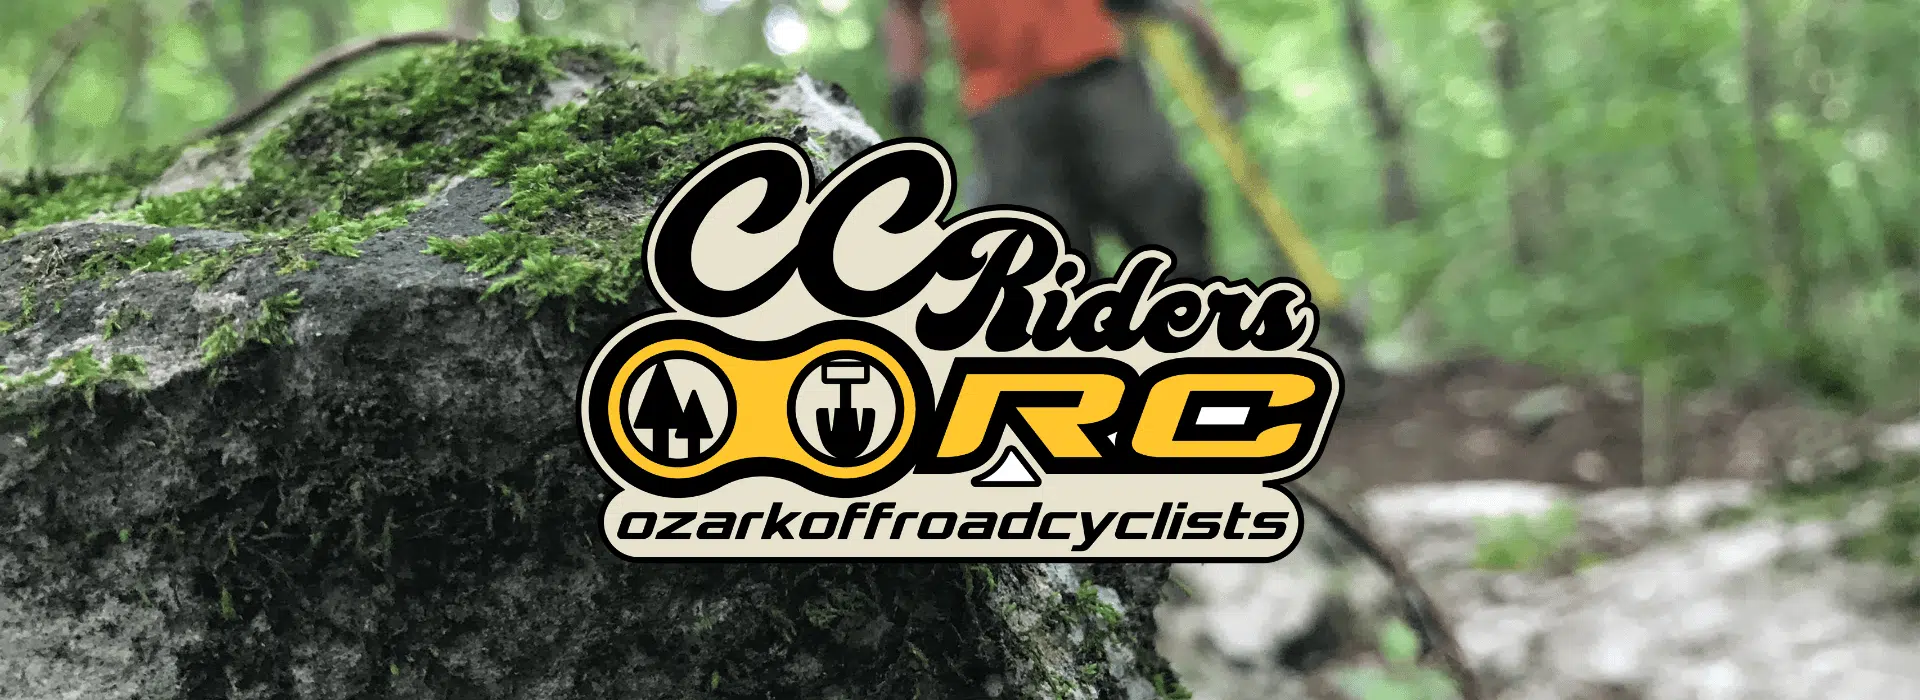 CCRiders - Ozark Off Road Cyclist